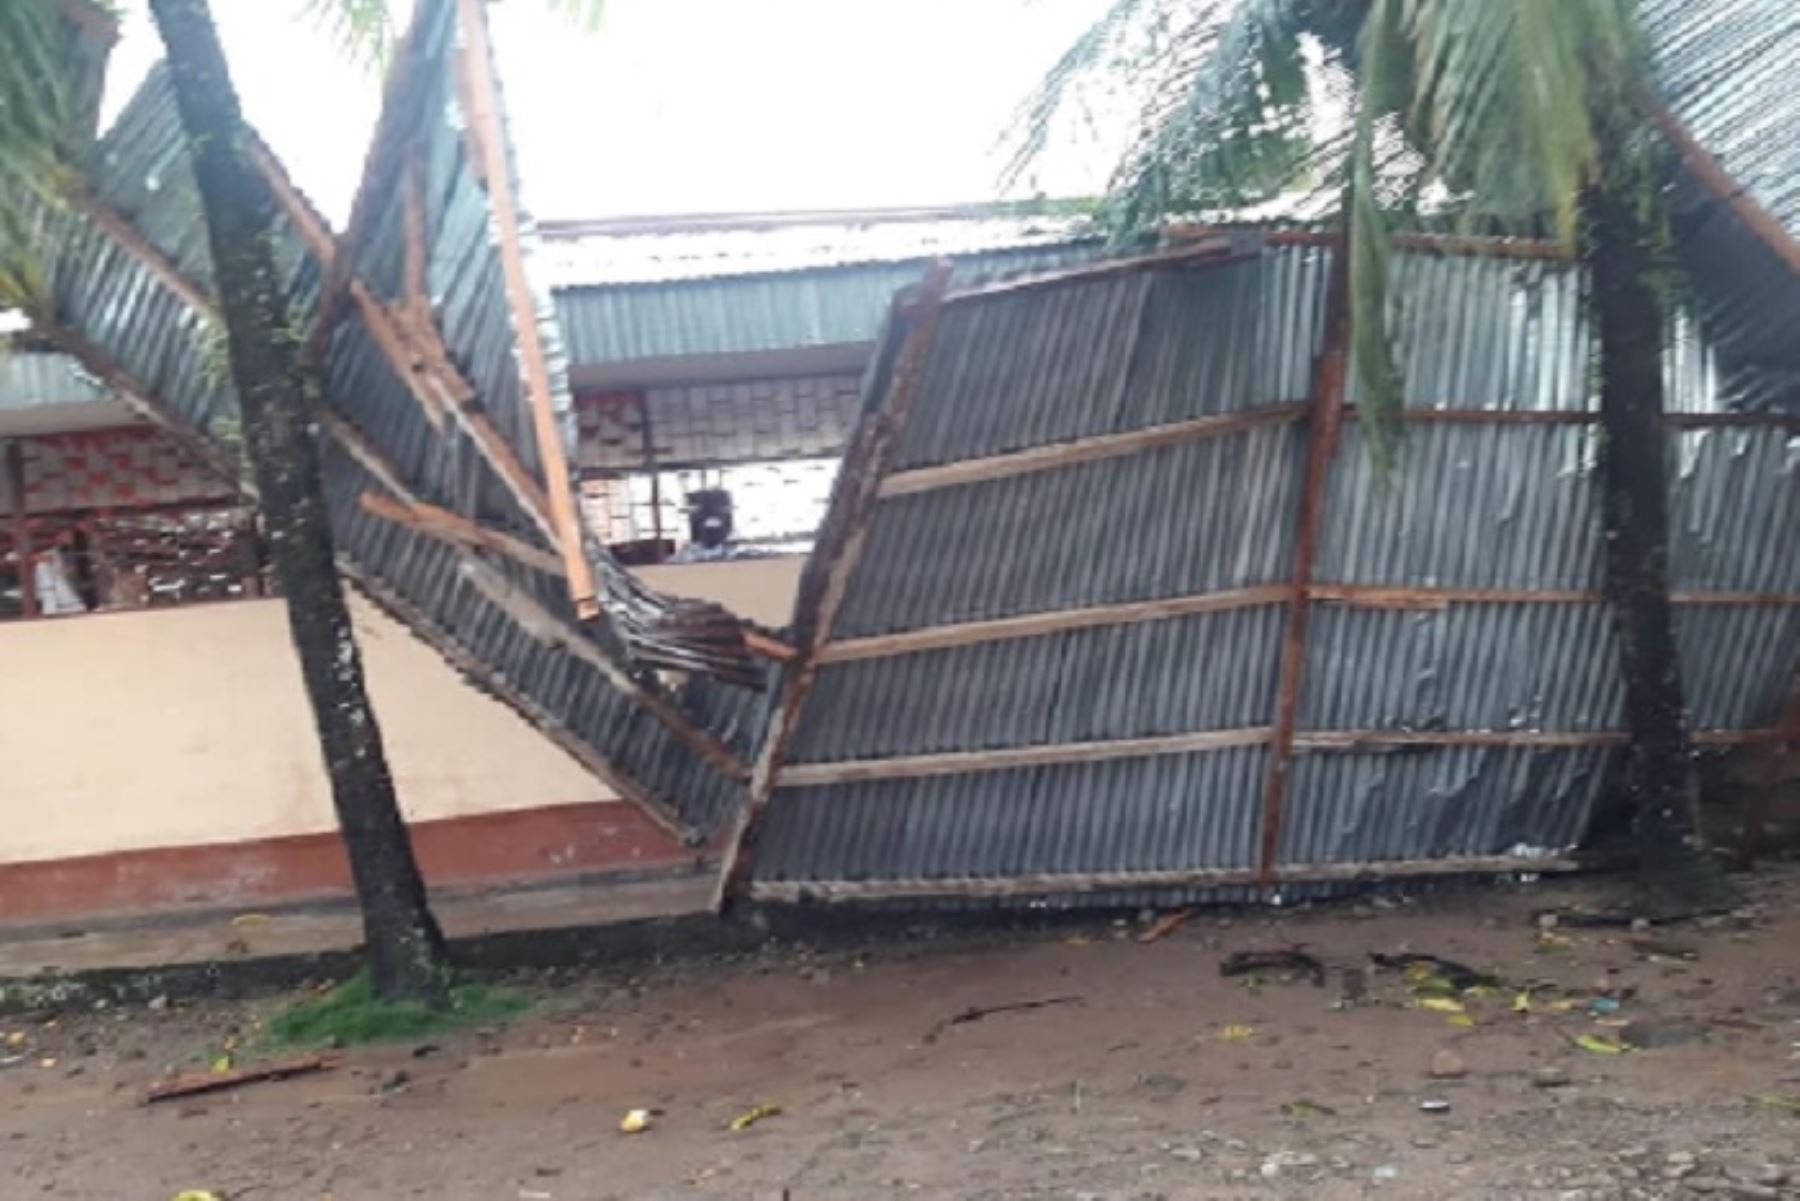 Vientos fuertes en San Martín dañaron aulas de colegio en Lamas